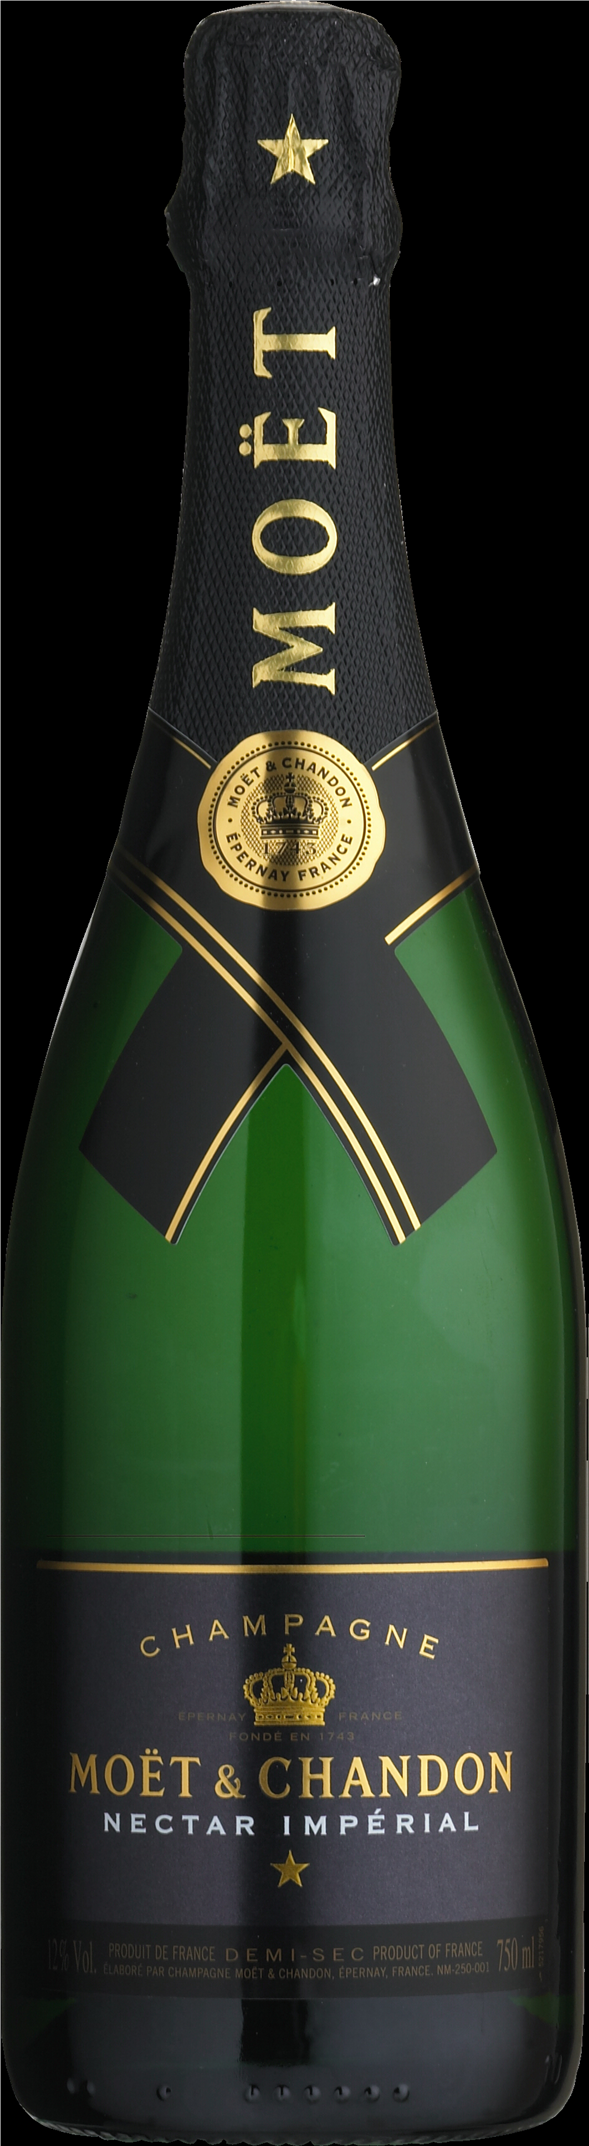 Moët & Chandon Nectar Imperial, Champagne Frankrig